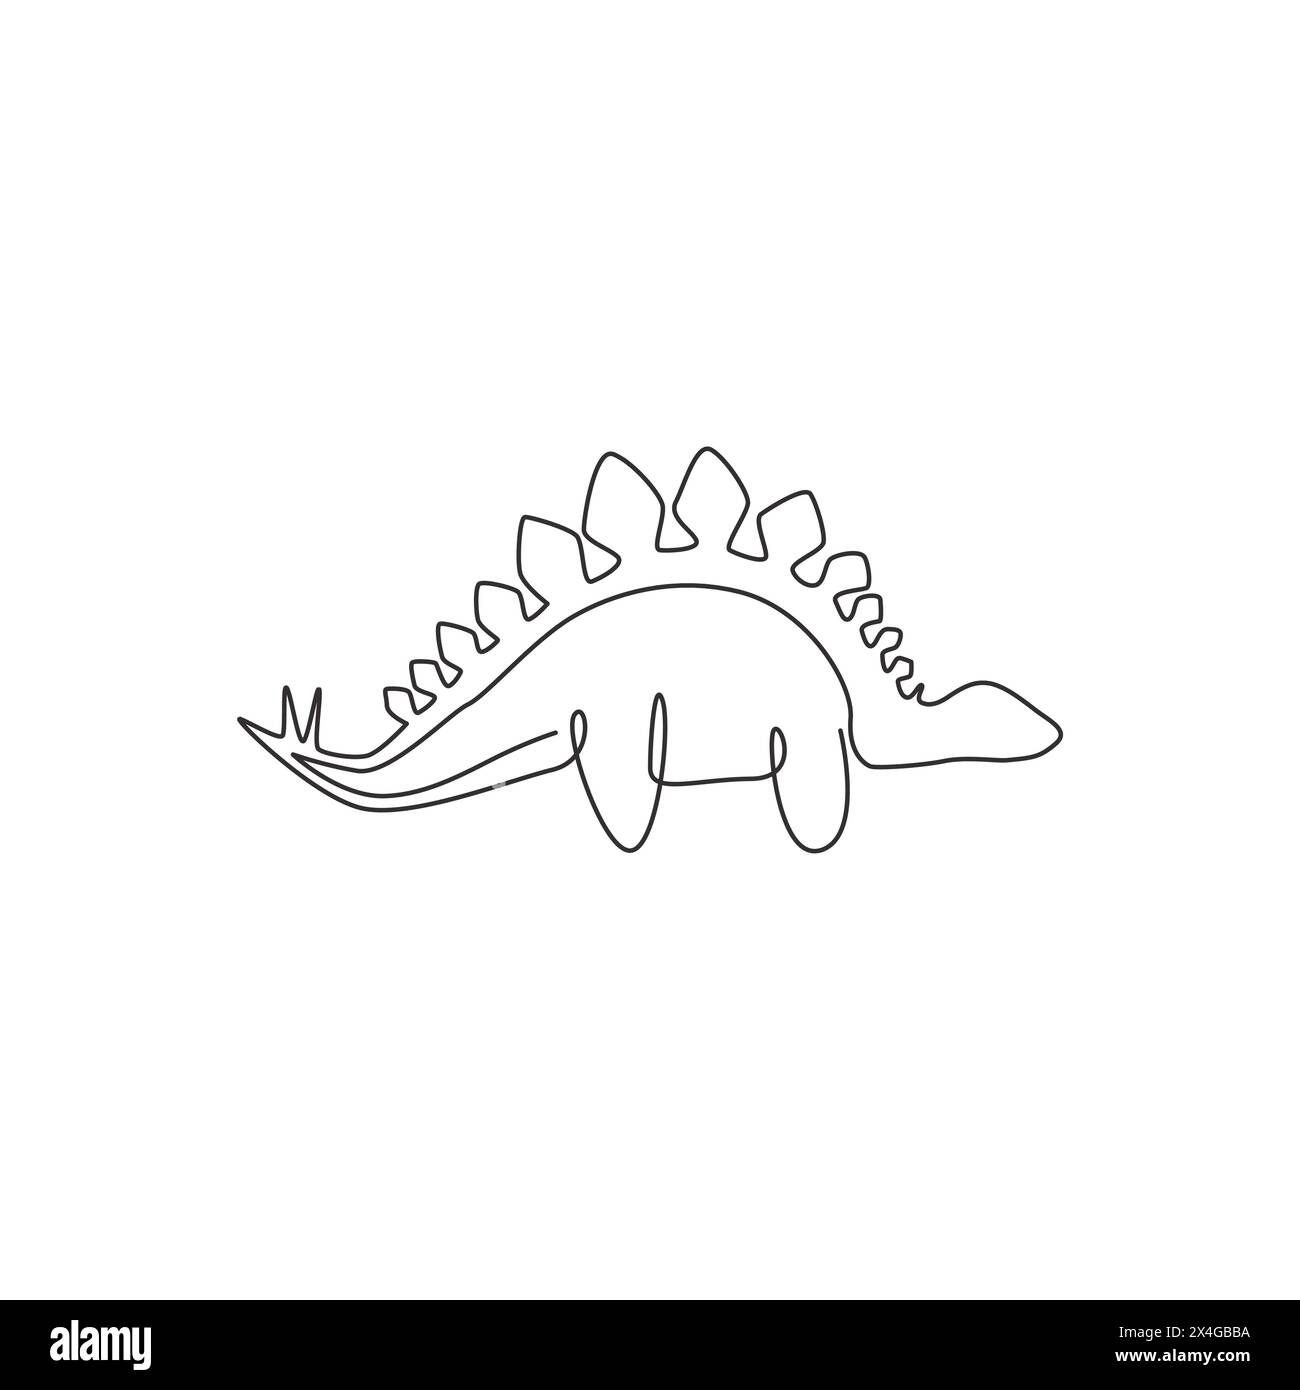 Un disegno continuo di dinosauri per l'identità del logo. Concetto di mascotte Stegosaurus per l'icona del museo preistorico. Moderno design a linea singola Illustrazione Vettoriale